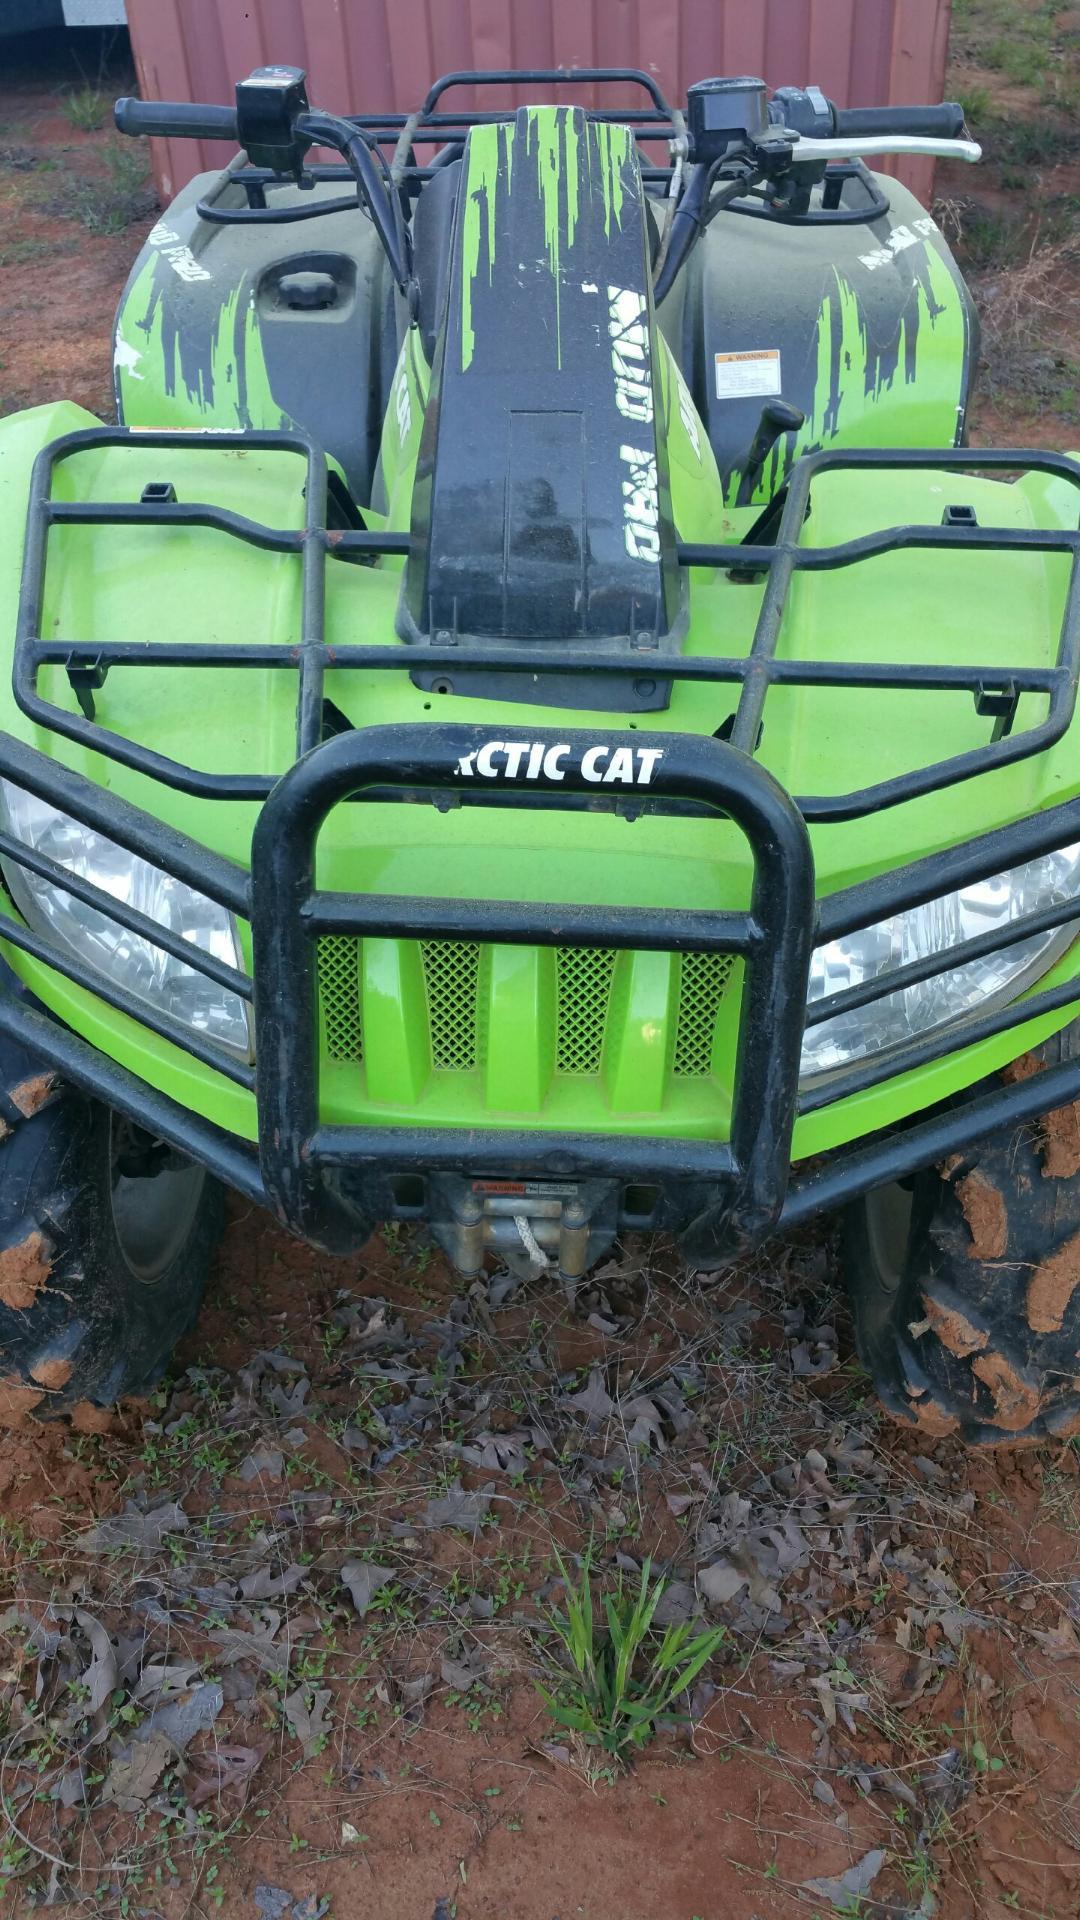 2011 Arctic Cat Mud Pro 700 EF1 4x4, Green, 1200 Miles